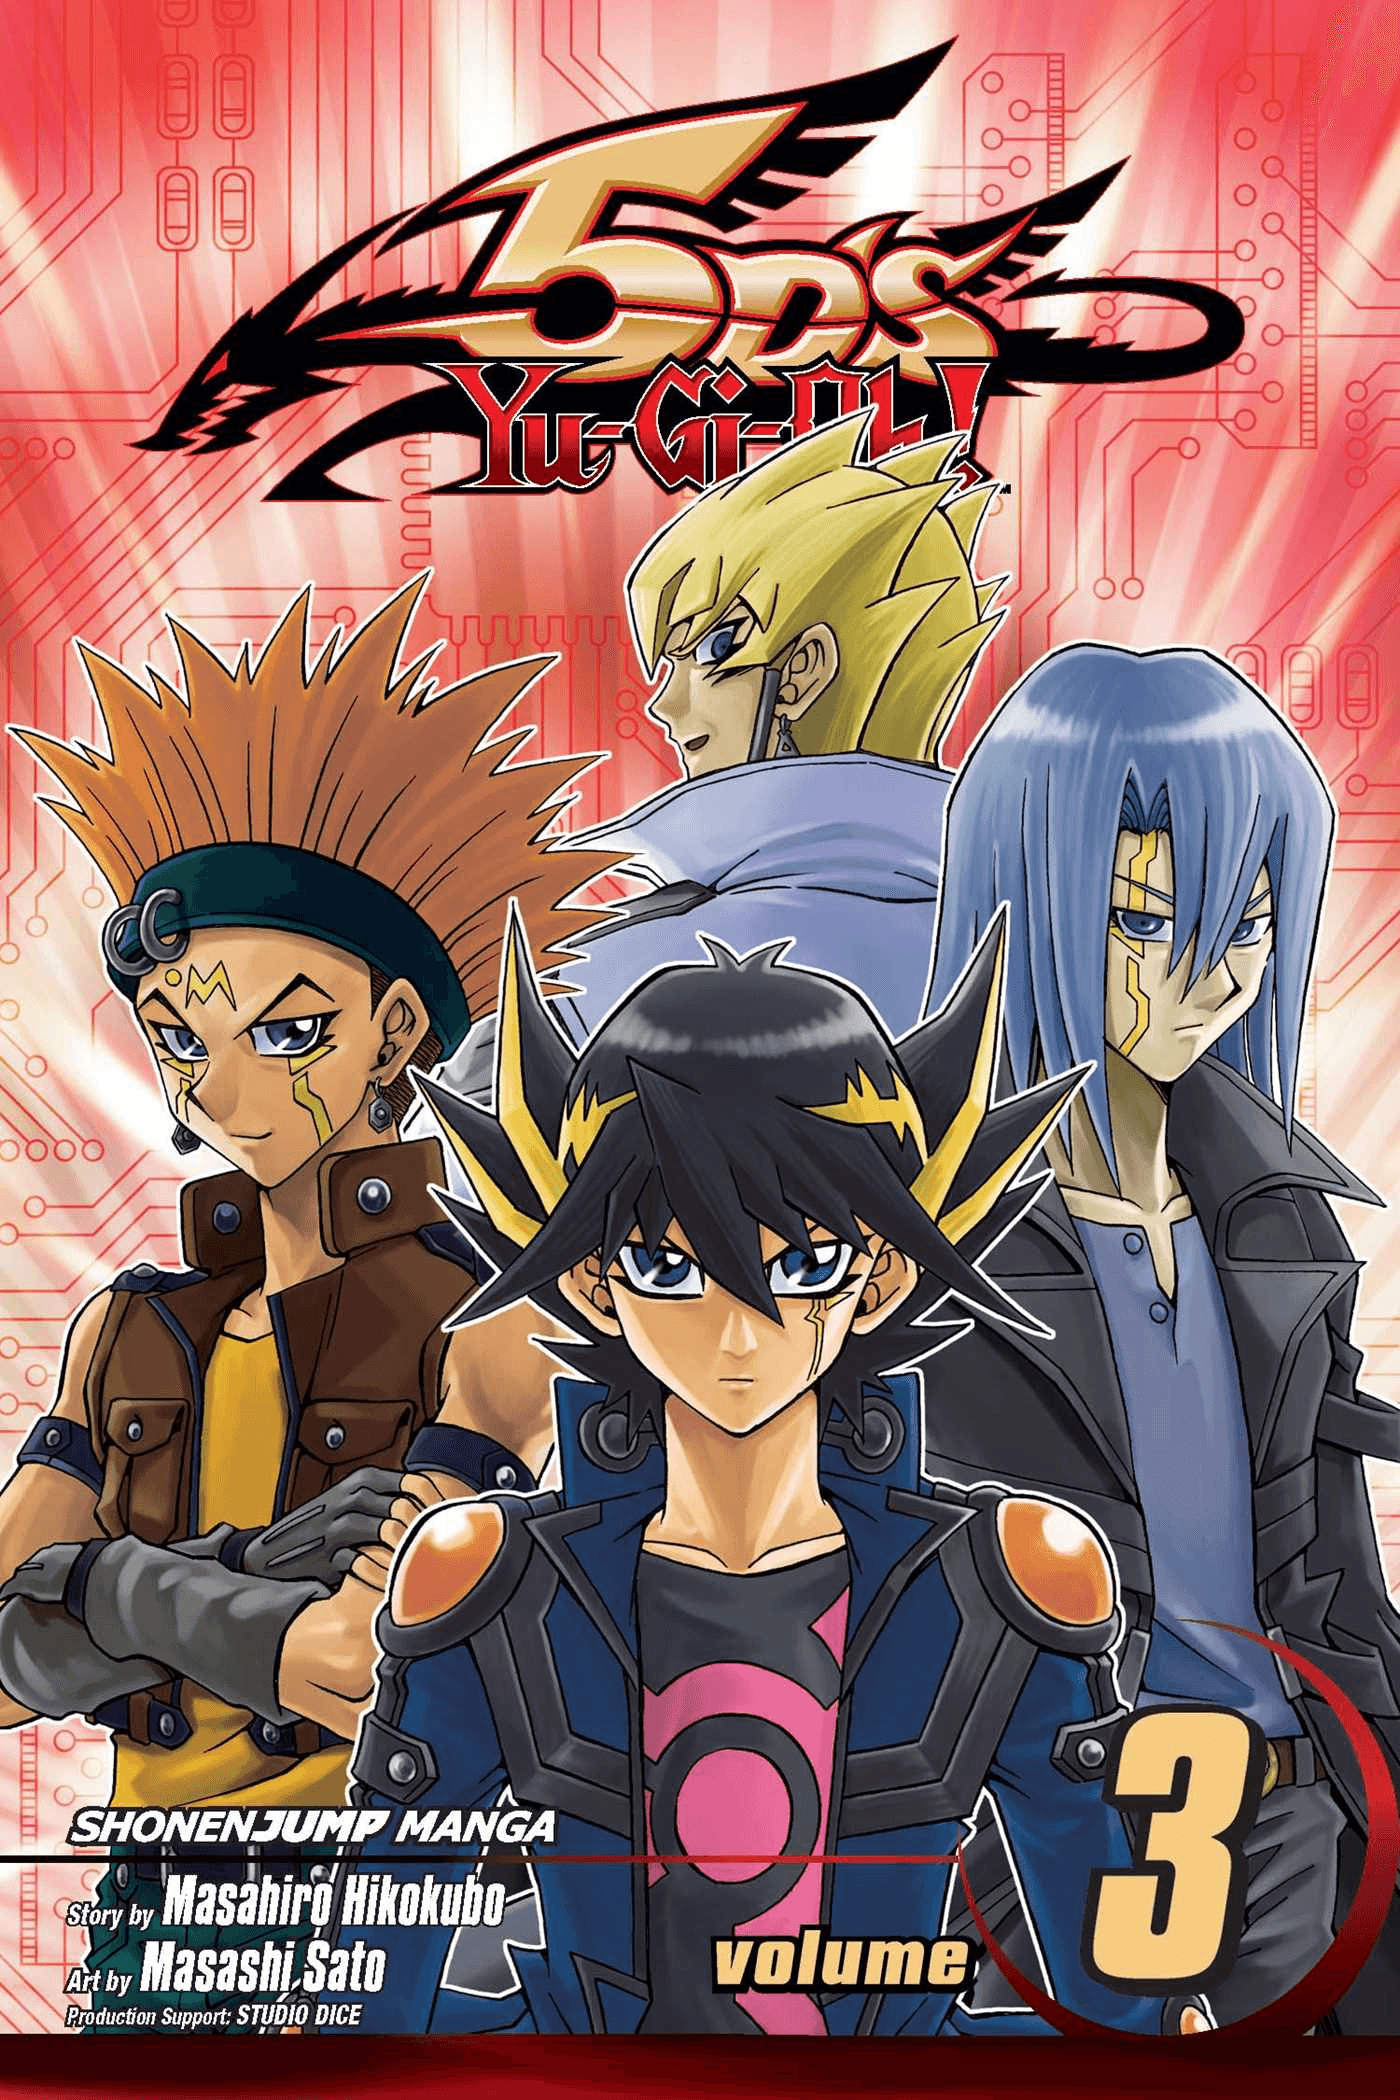 Yu-Gi-Oh! 5D's (manga), Yu-Gi-Oh! Wiki